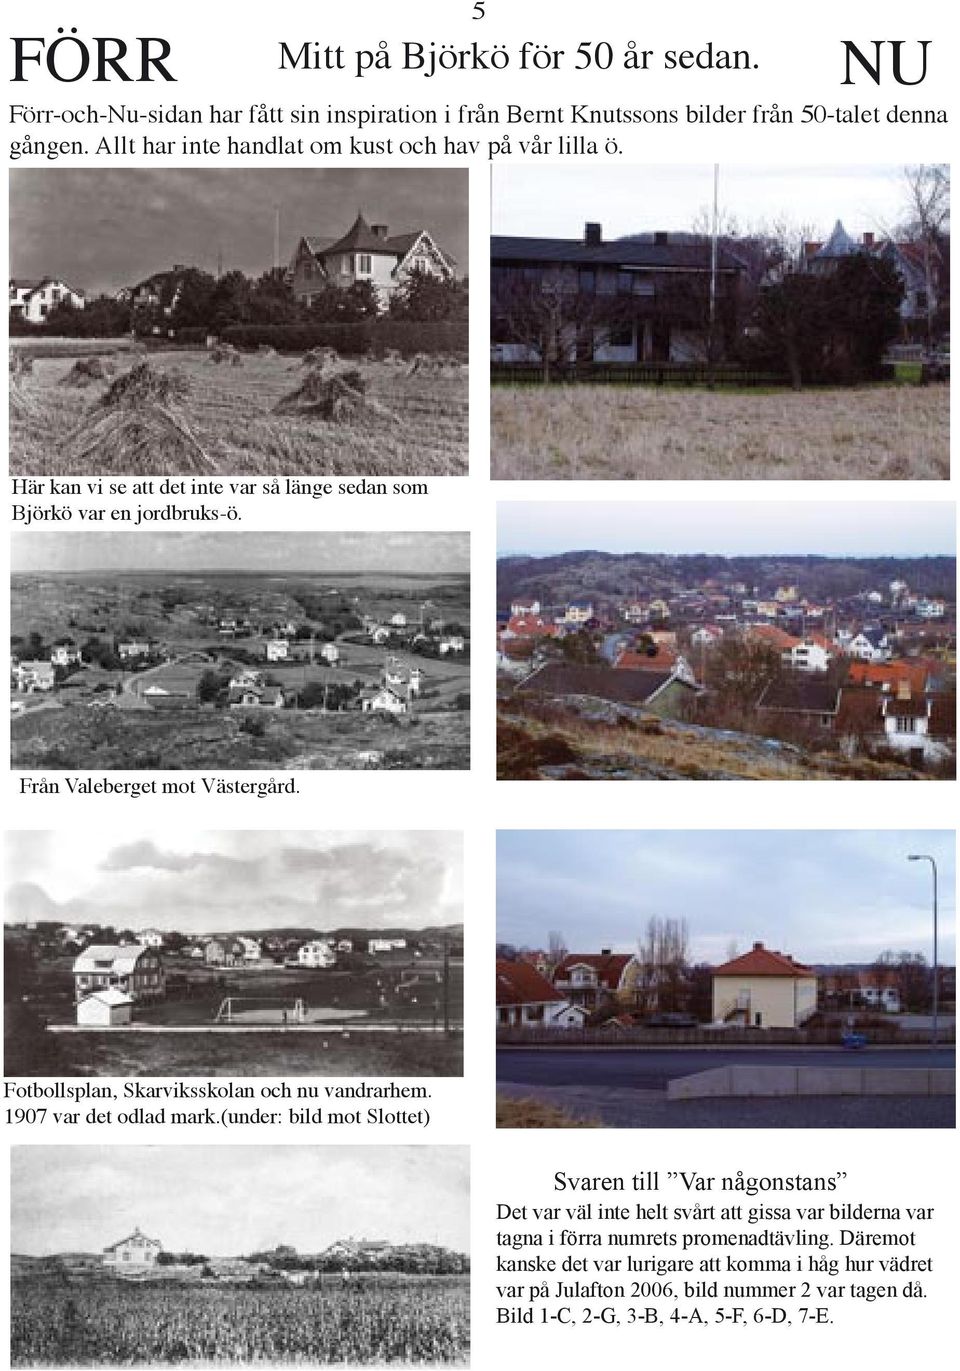 Fotbollsplan, Skarviksskolan och nu vandrarhem. 1907 var det odlad mark.